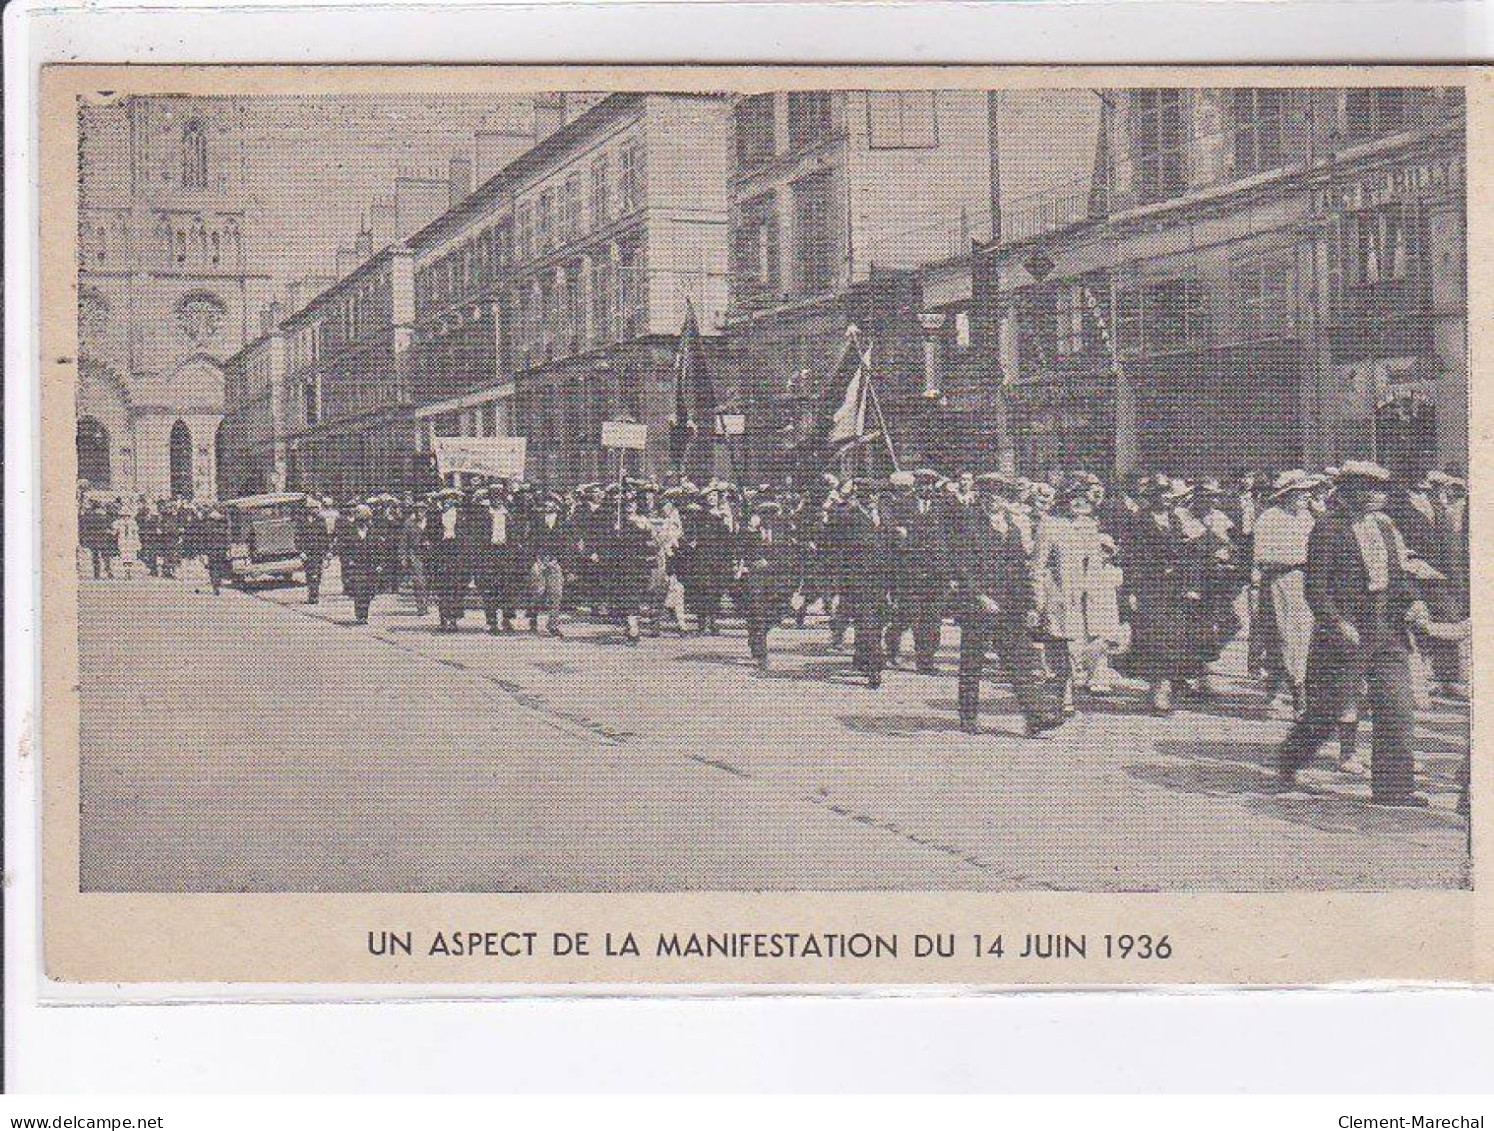 ORLEANS: lot de 11CPA la manifestation antifasciste d'orleans 22 avril 1934 - très bon état